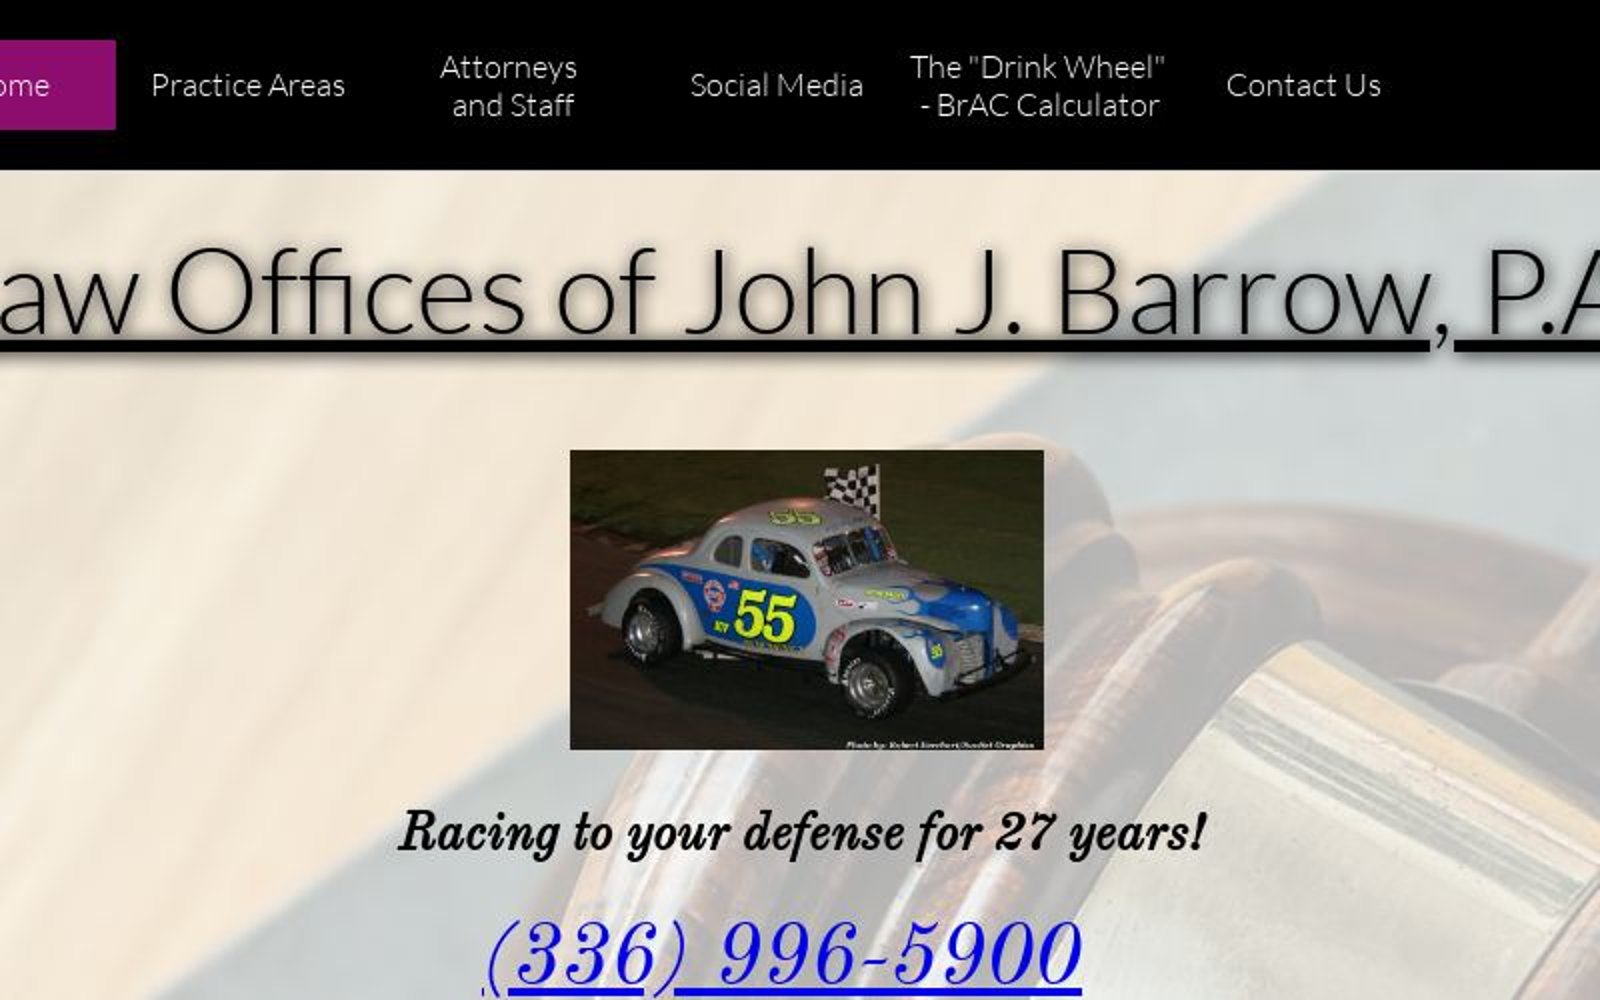 Barrow John J Law Office Of